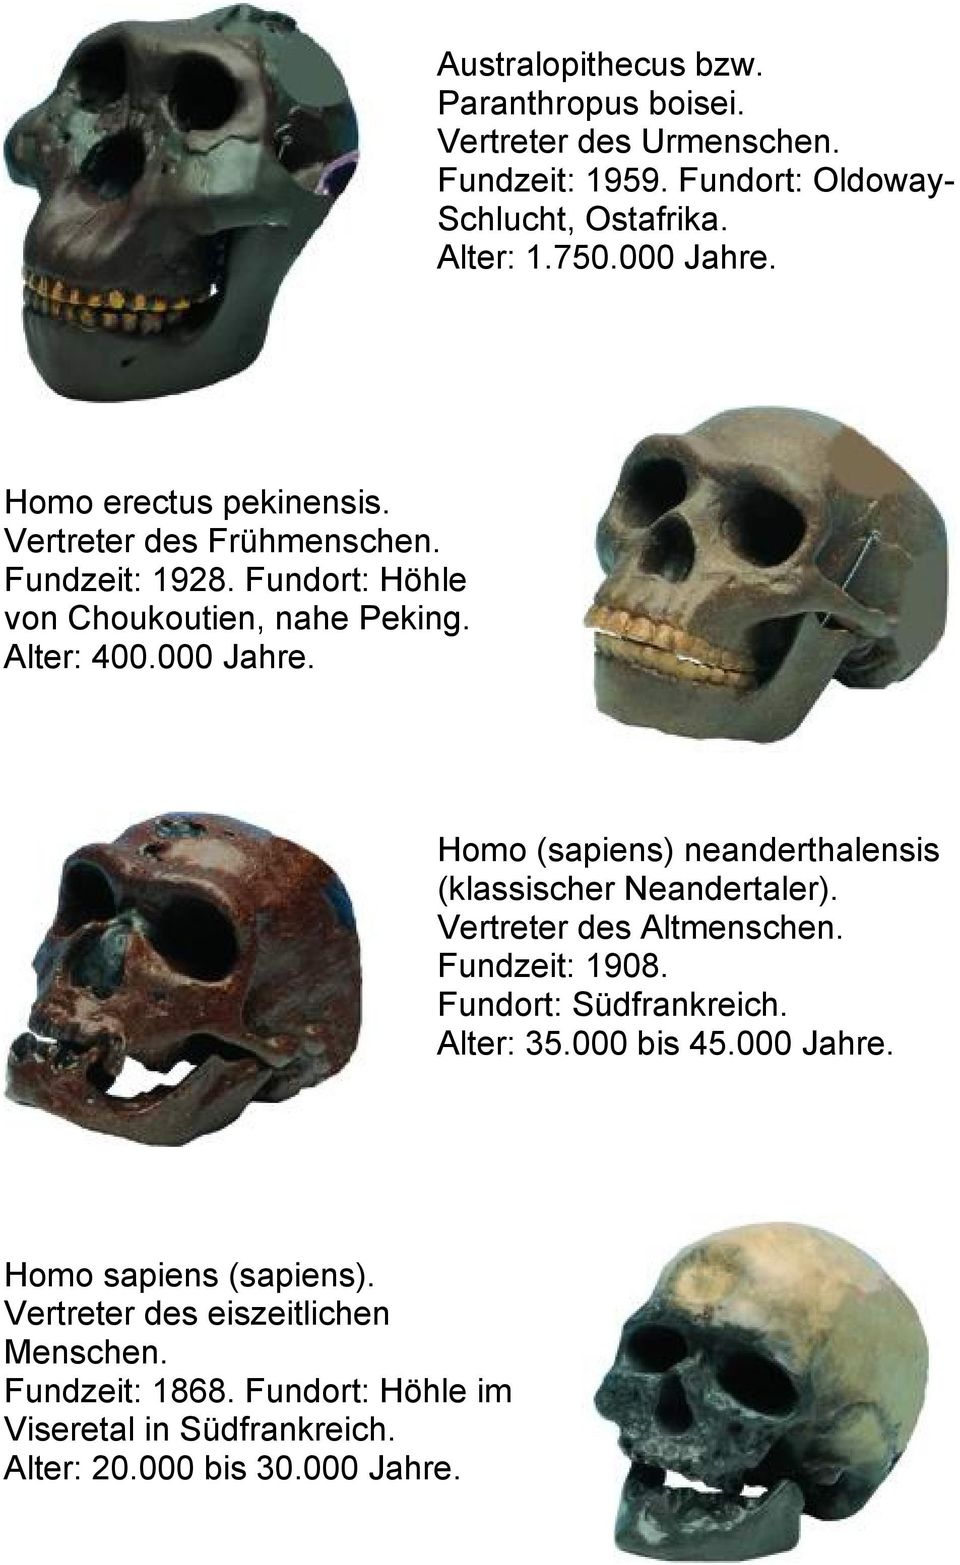 Homo (sapiens) neanderthalensis (klassischer Neandertaler). Vertreter des Altmenschen. Fundzeit: 1908. Fundort: Südfrankreich. Alter: 35.000 bis 45.